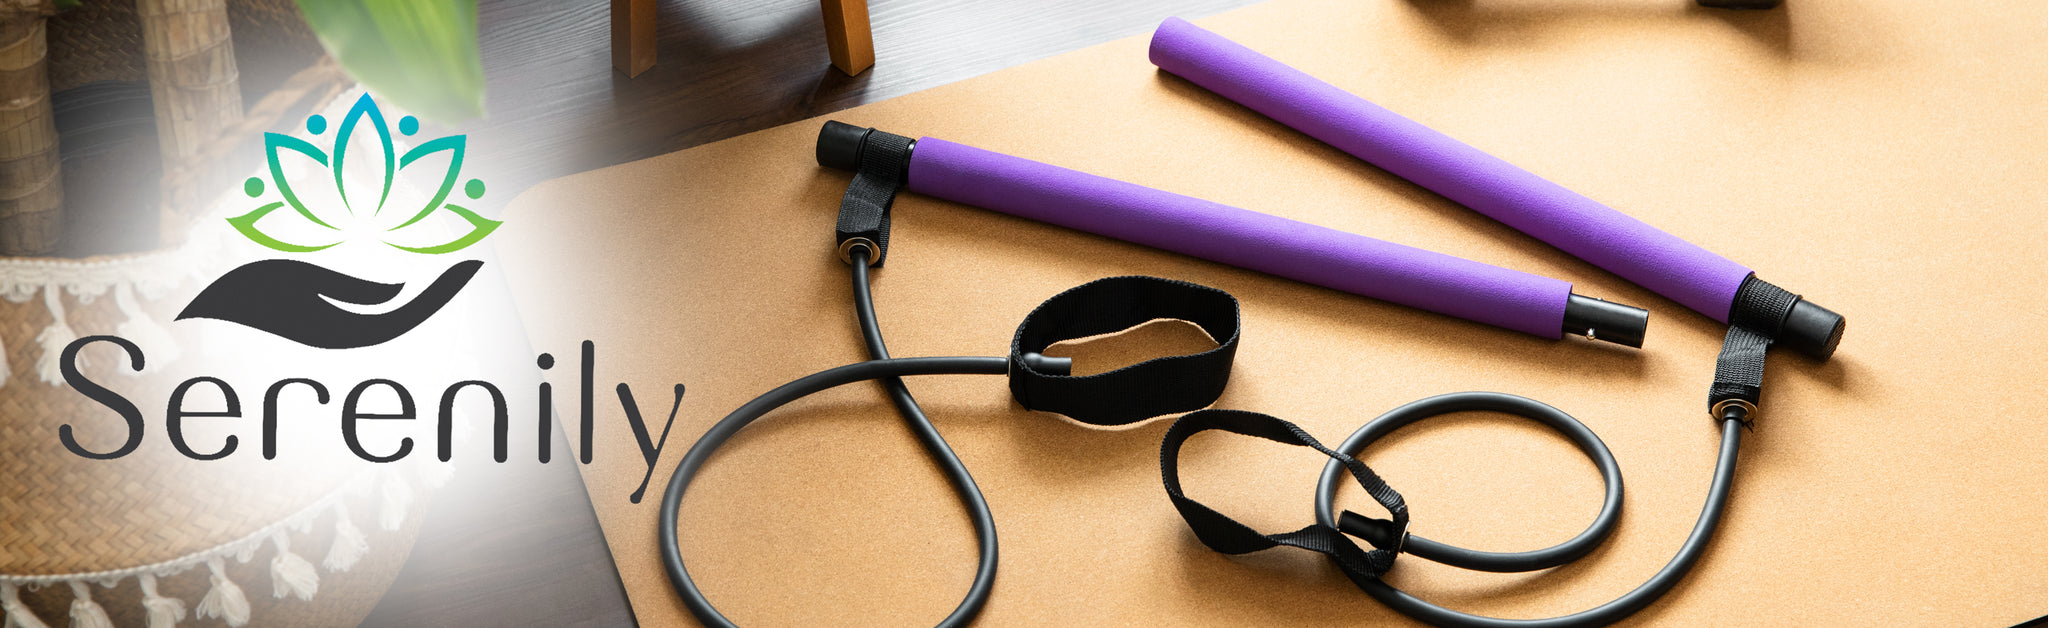 Serenily Pilates Bar Yoga Stick - Pilates bar kit for Home Gym with Pi –